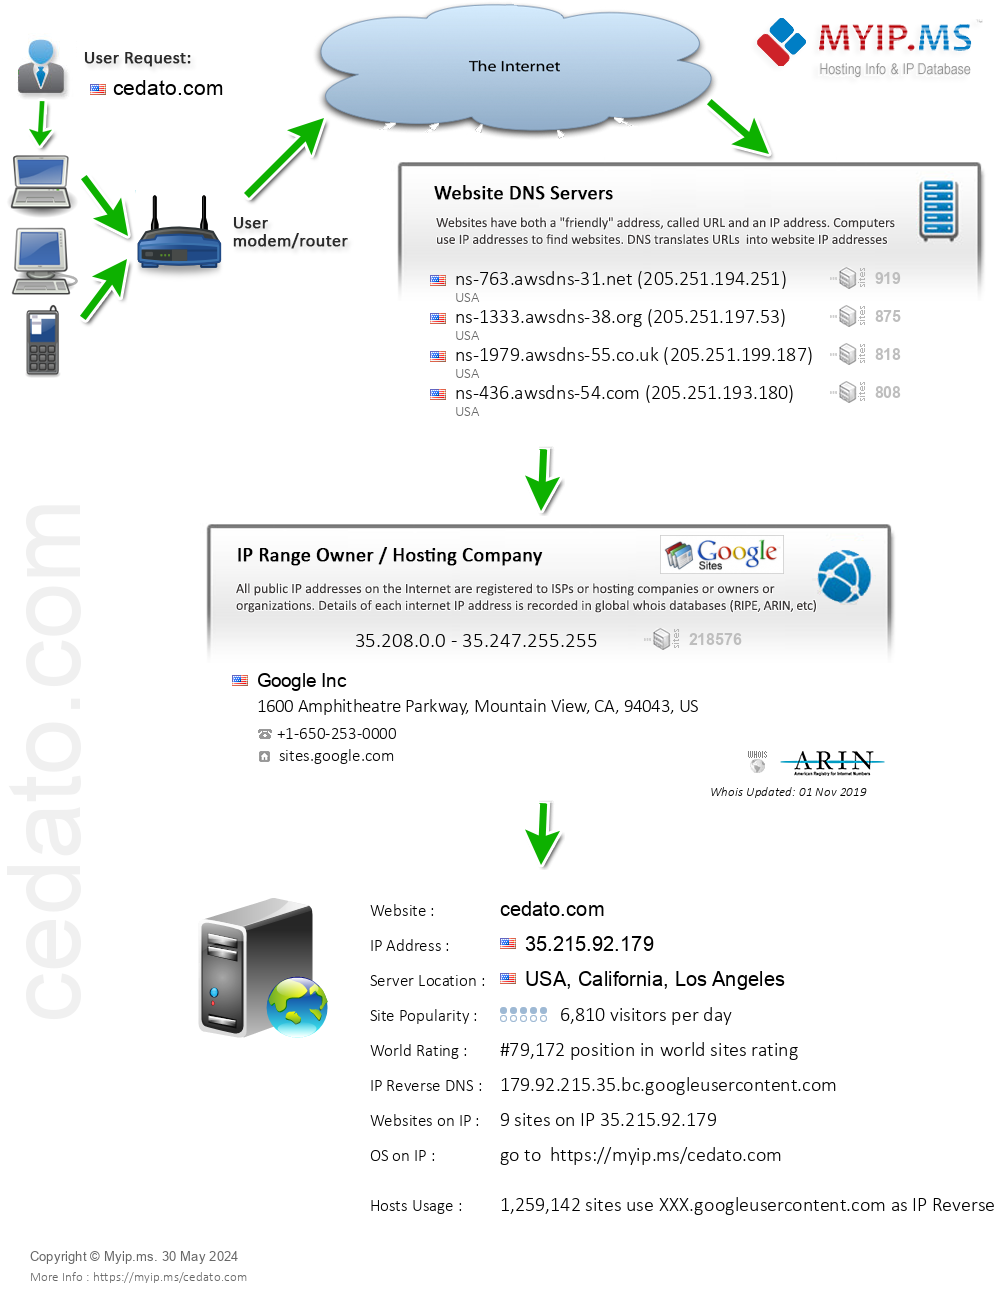 Cedato.com - Website Hosting Visual IP Diagram